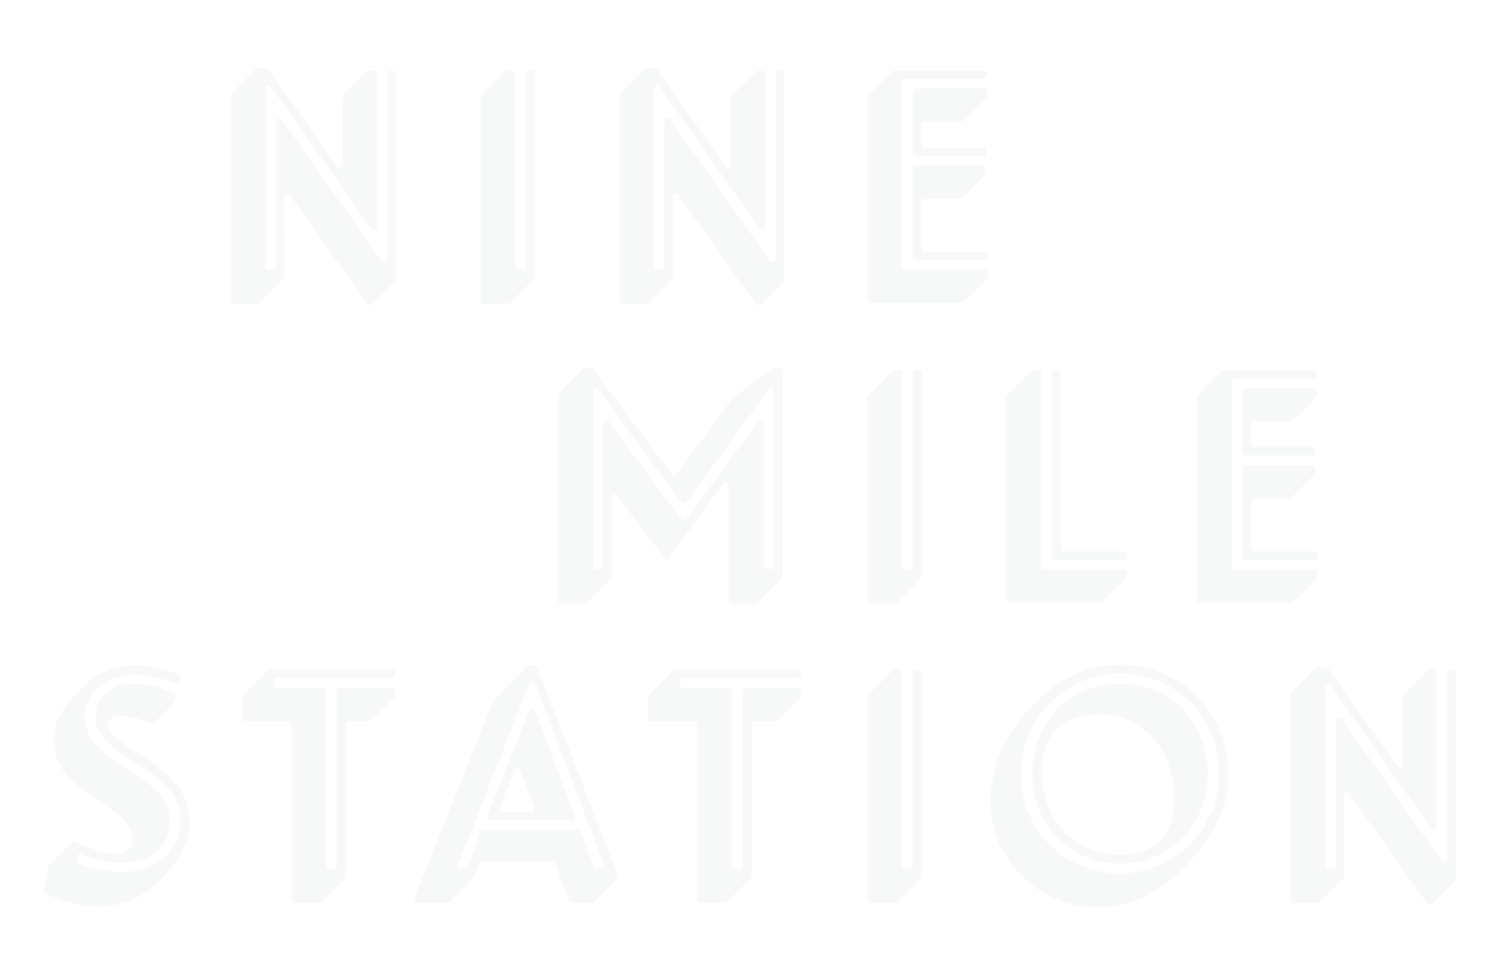 9 Mile Station